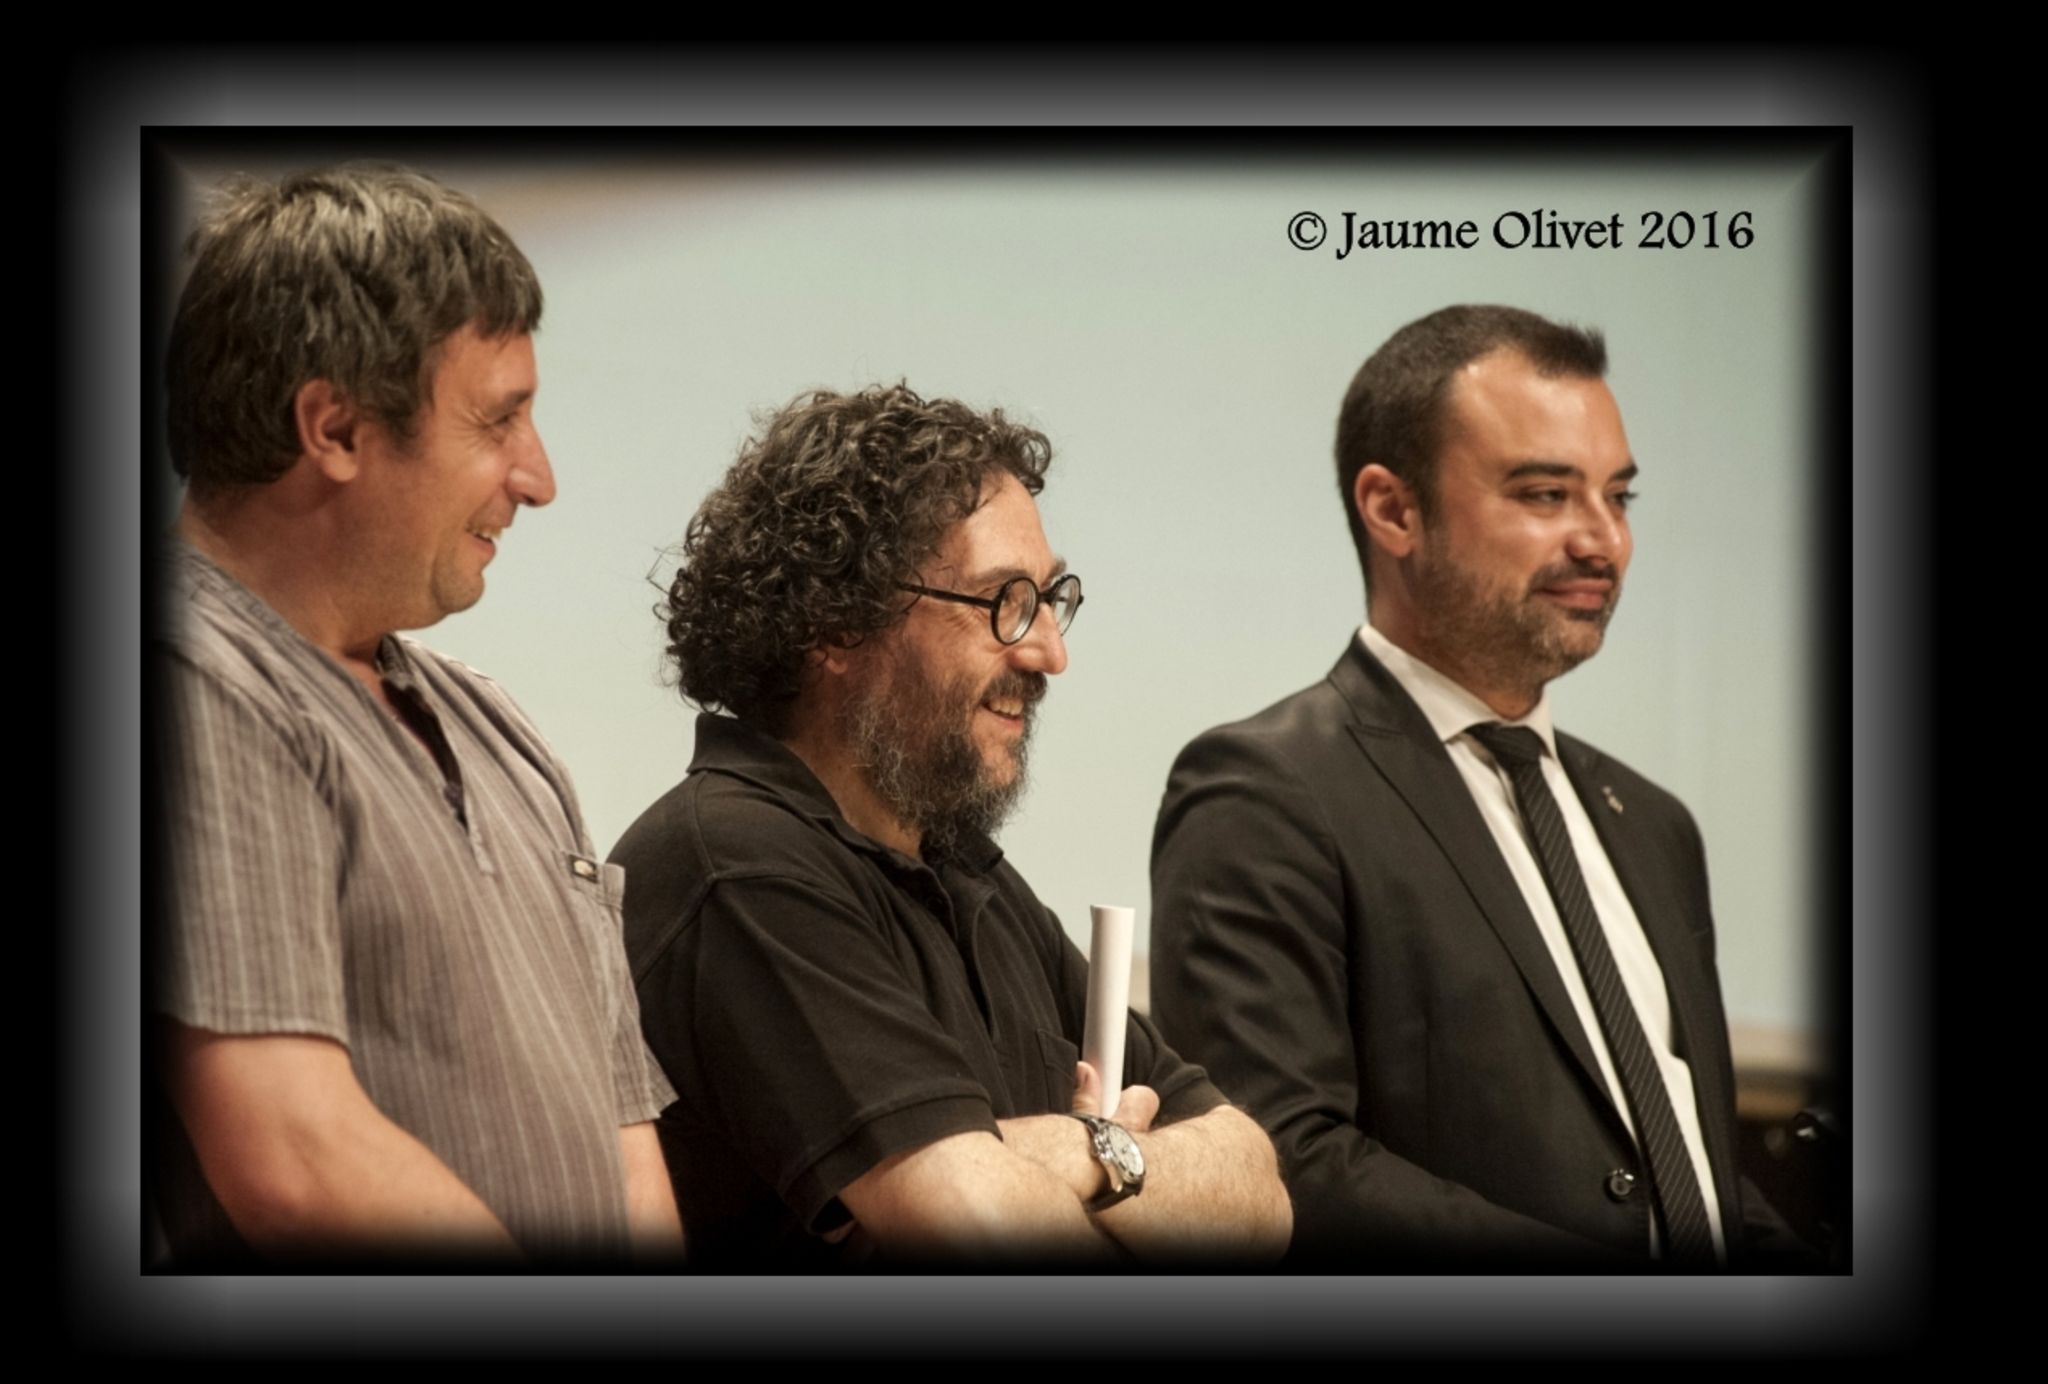  Jaume Olivet 2016 